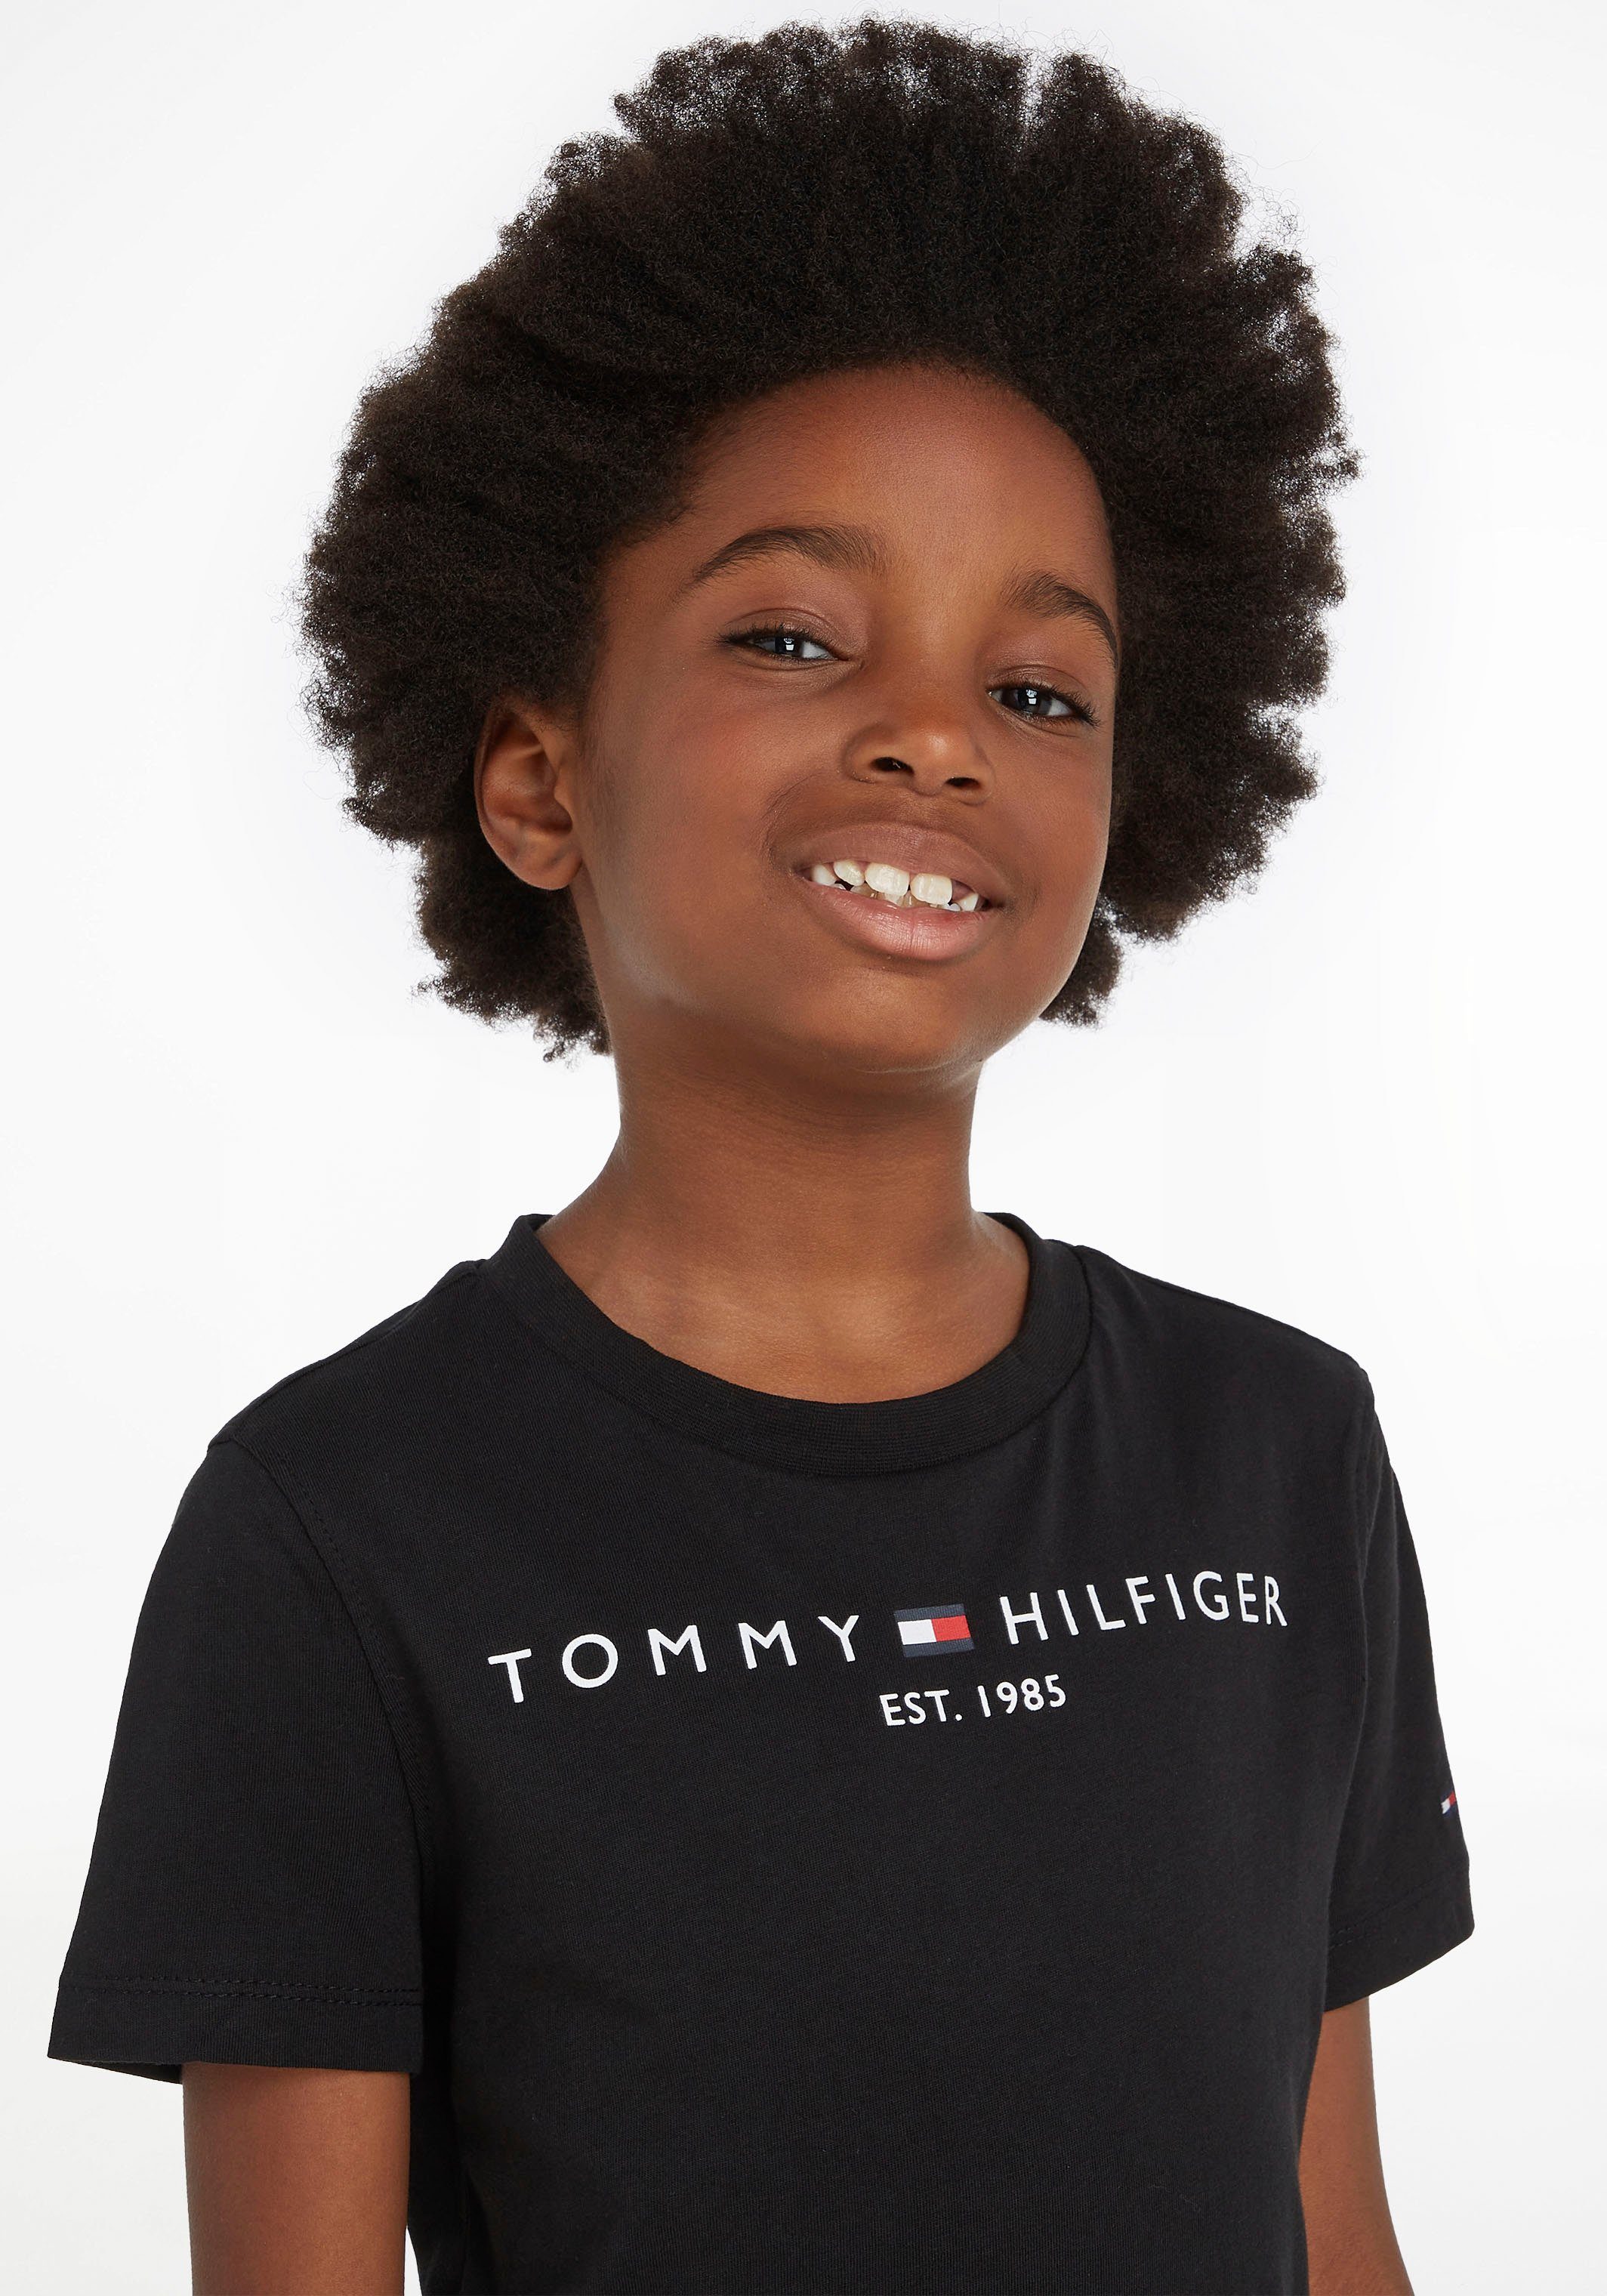 TEE für Tommy Mädchen T-Shirt Hilfiger ESSENTIAL Jungen und